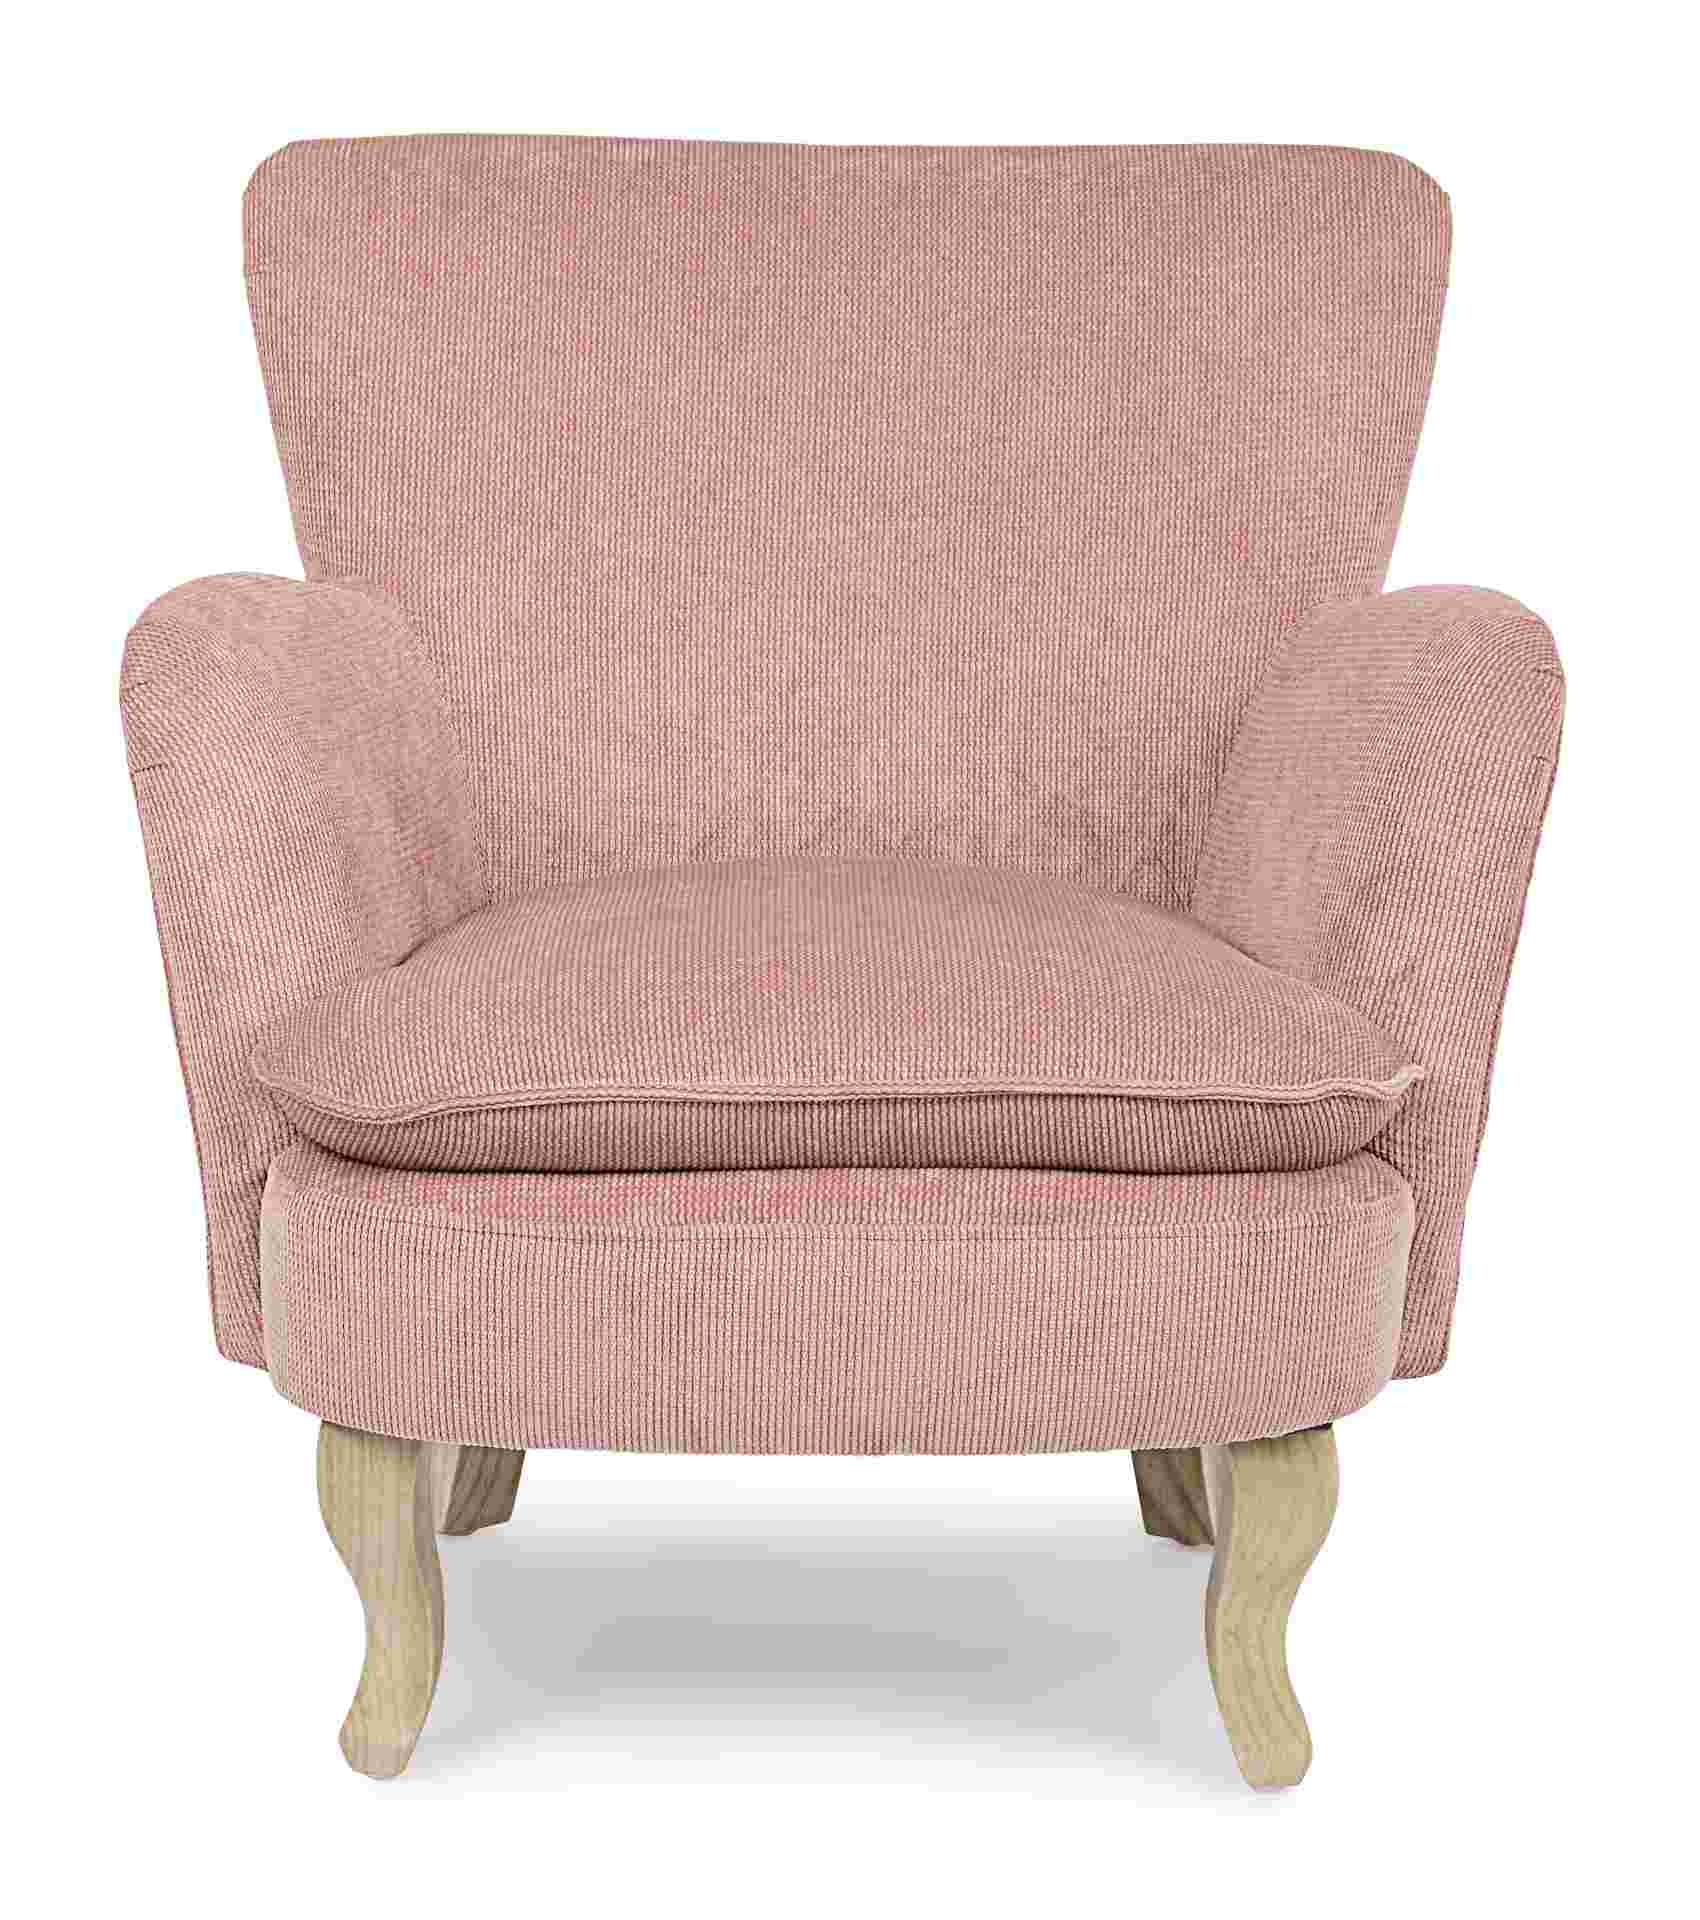 Der Sessel Chenille überzeugt mit seinem klassischen Design. Gefertigt wurde er aus Stoff in Cord-Optik, welcher einen rosa Farbton besitzt. Das Gestell ist aus Kautschukholz und hat eine natürliche Farbe. Der Sessel besitzt eine Sitzhöhe von 45 cm. Die B